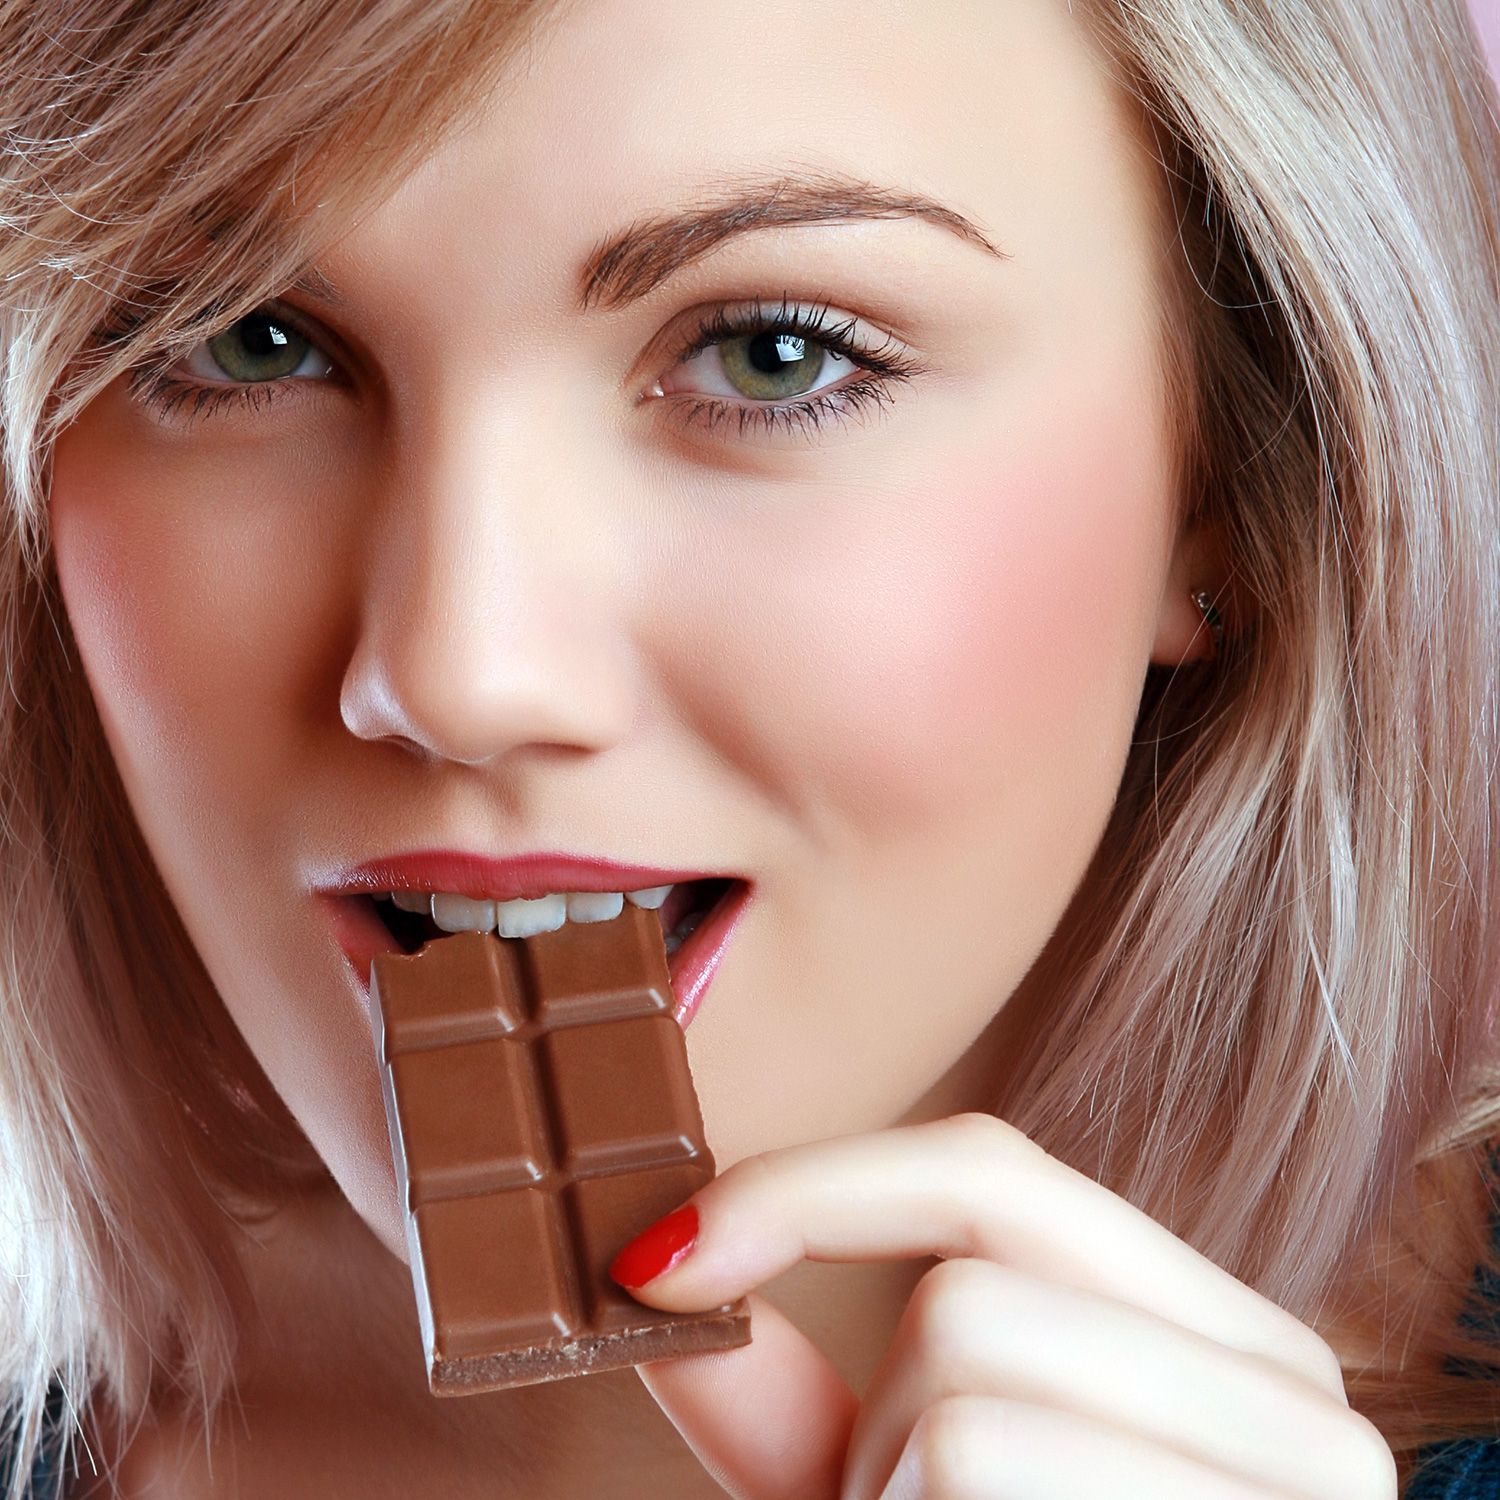 Шоколадки кушаем. Девушка в шоколаде. Девушка ест шоколад. Девушка ест конфету. Девушка и сладкое.